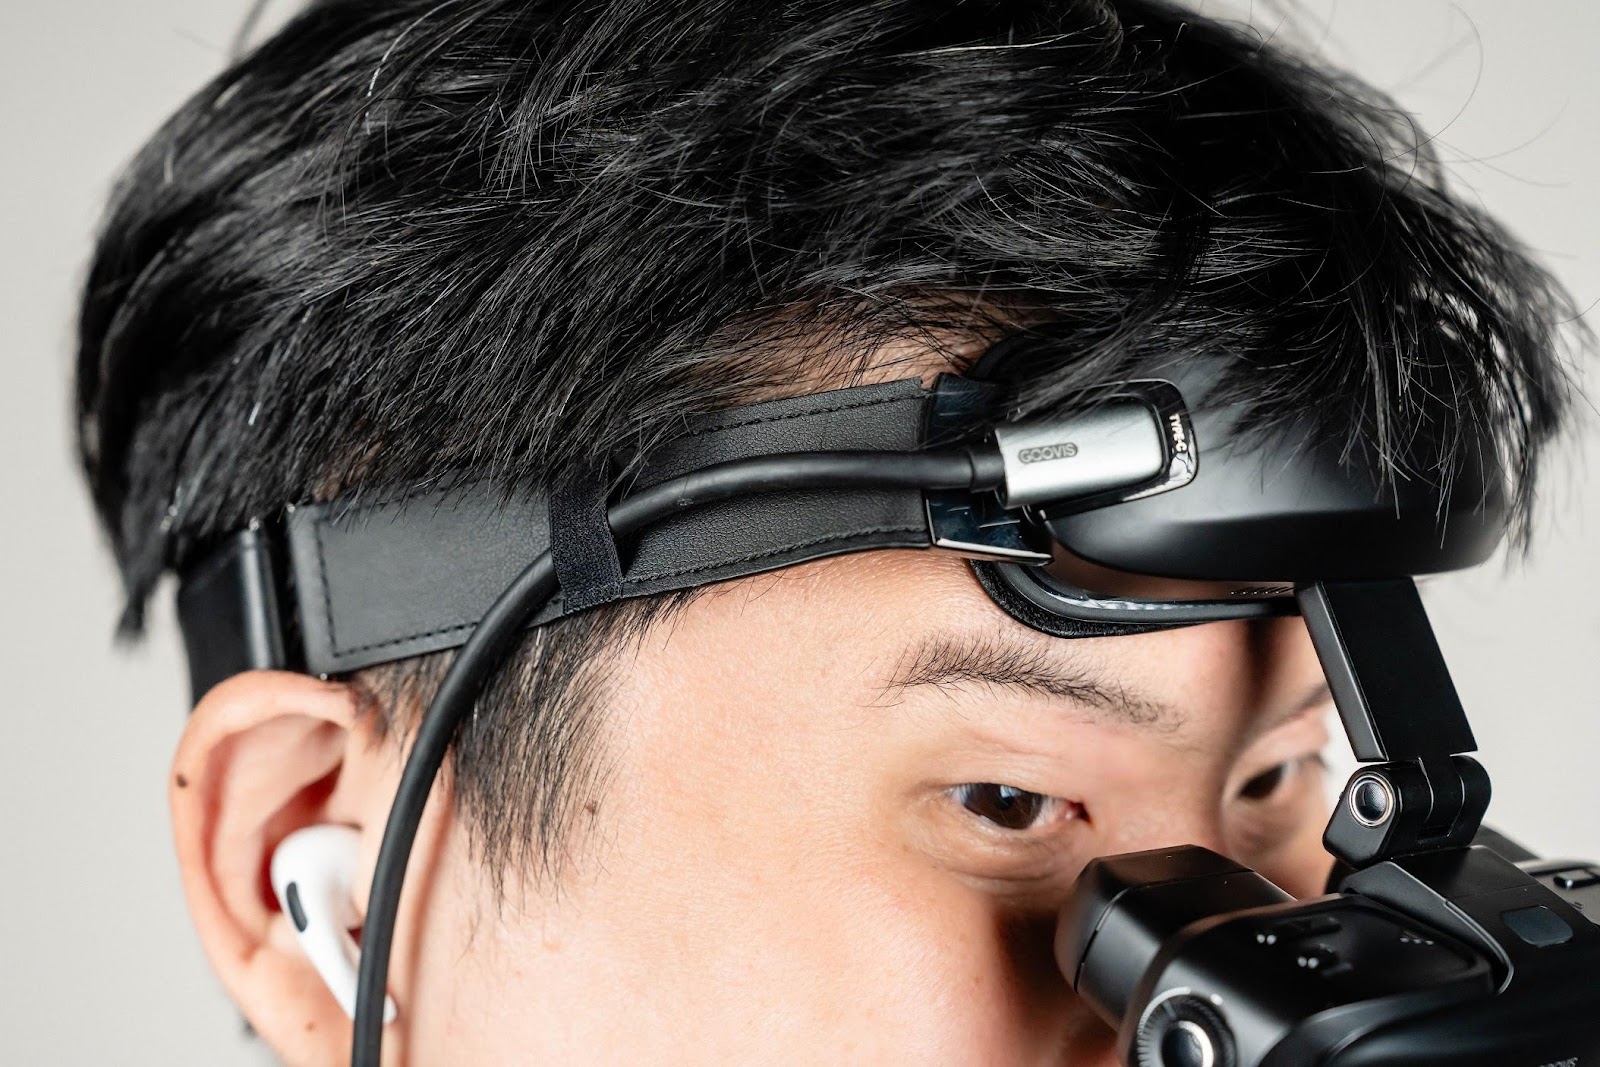 近視眼鏡可用 掌上型 130 吋 GOOVIS ART 懸浮式頭顯 開放式監看器｜DP Alt Mode、DMM VR、3D 影片｜科技狗 - DMM, GOOVIS, VR, 頭戴顯示器 - 科技狗 3C DOG